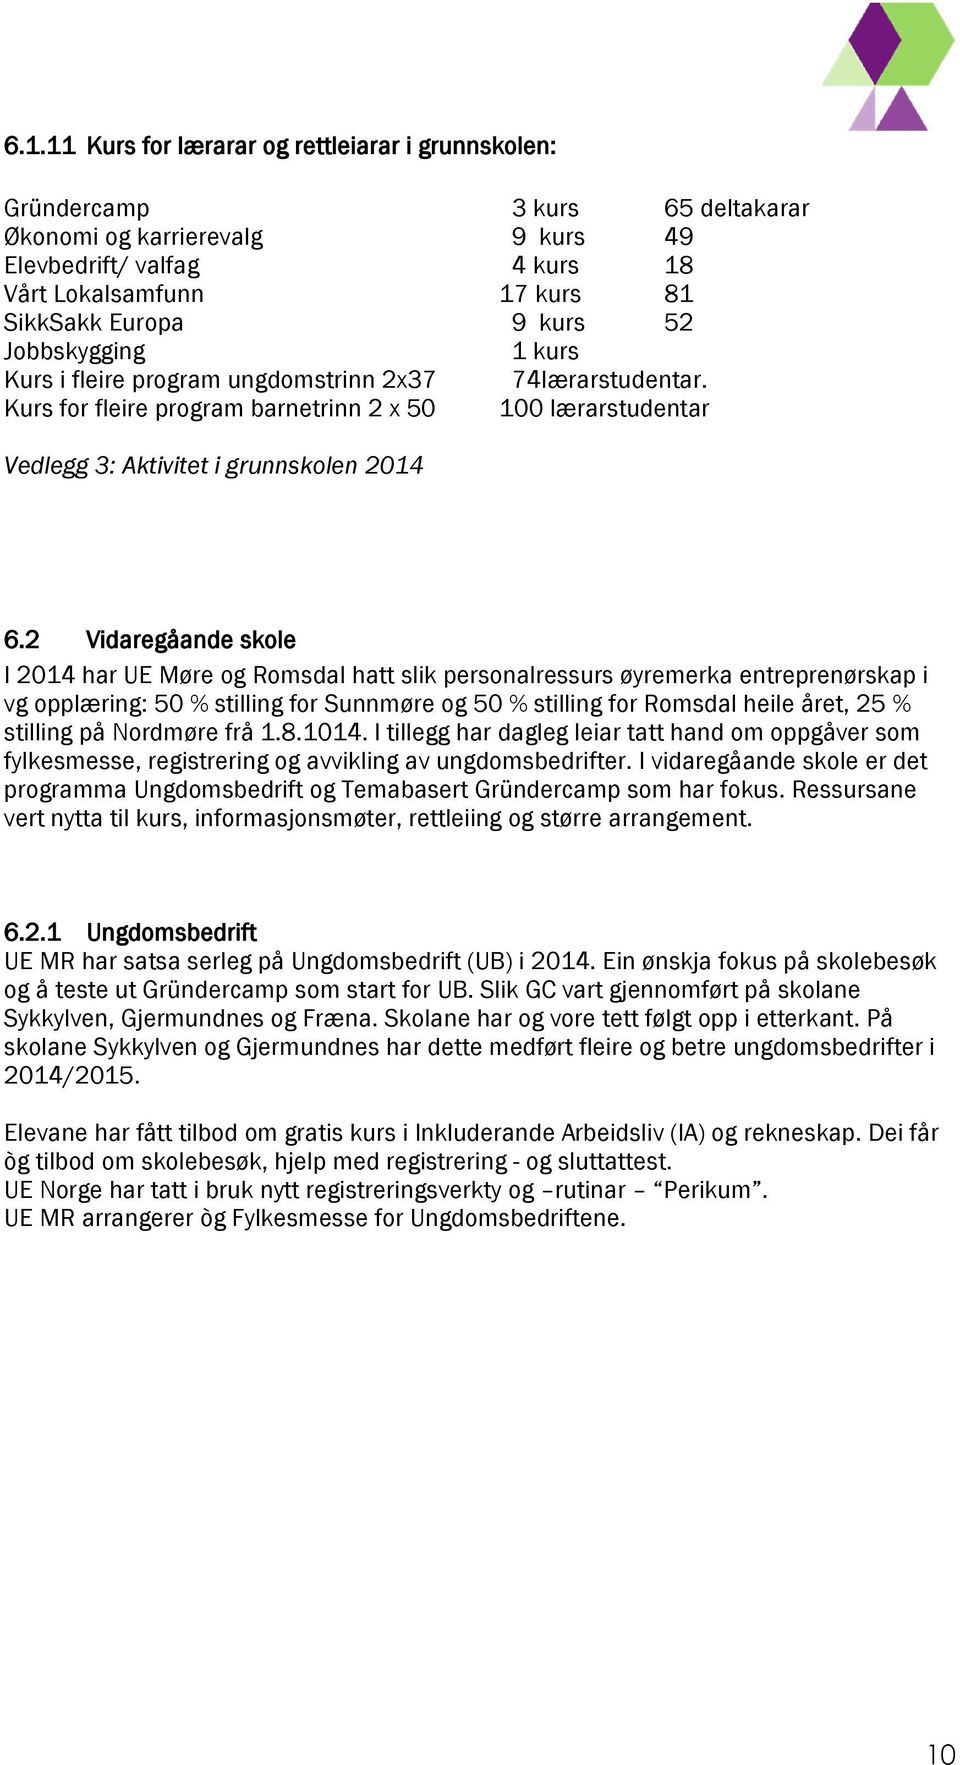 2 Vidaregåande skole I 2014 har UE Møre og Romsdal hatt slik personalressurs øyremerka entreprenørskap i vg opplæring: 50 % stilling for Sunnmøre og 50 % stilling for Romsdal heile året, 25 %